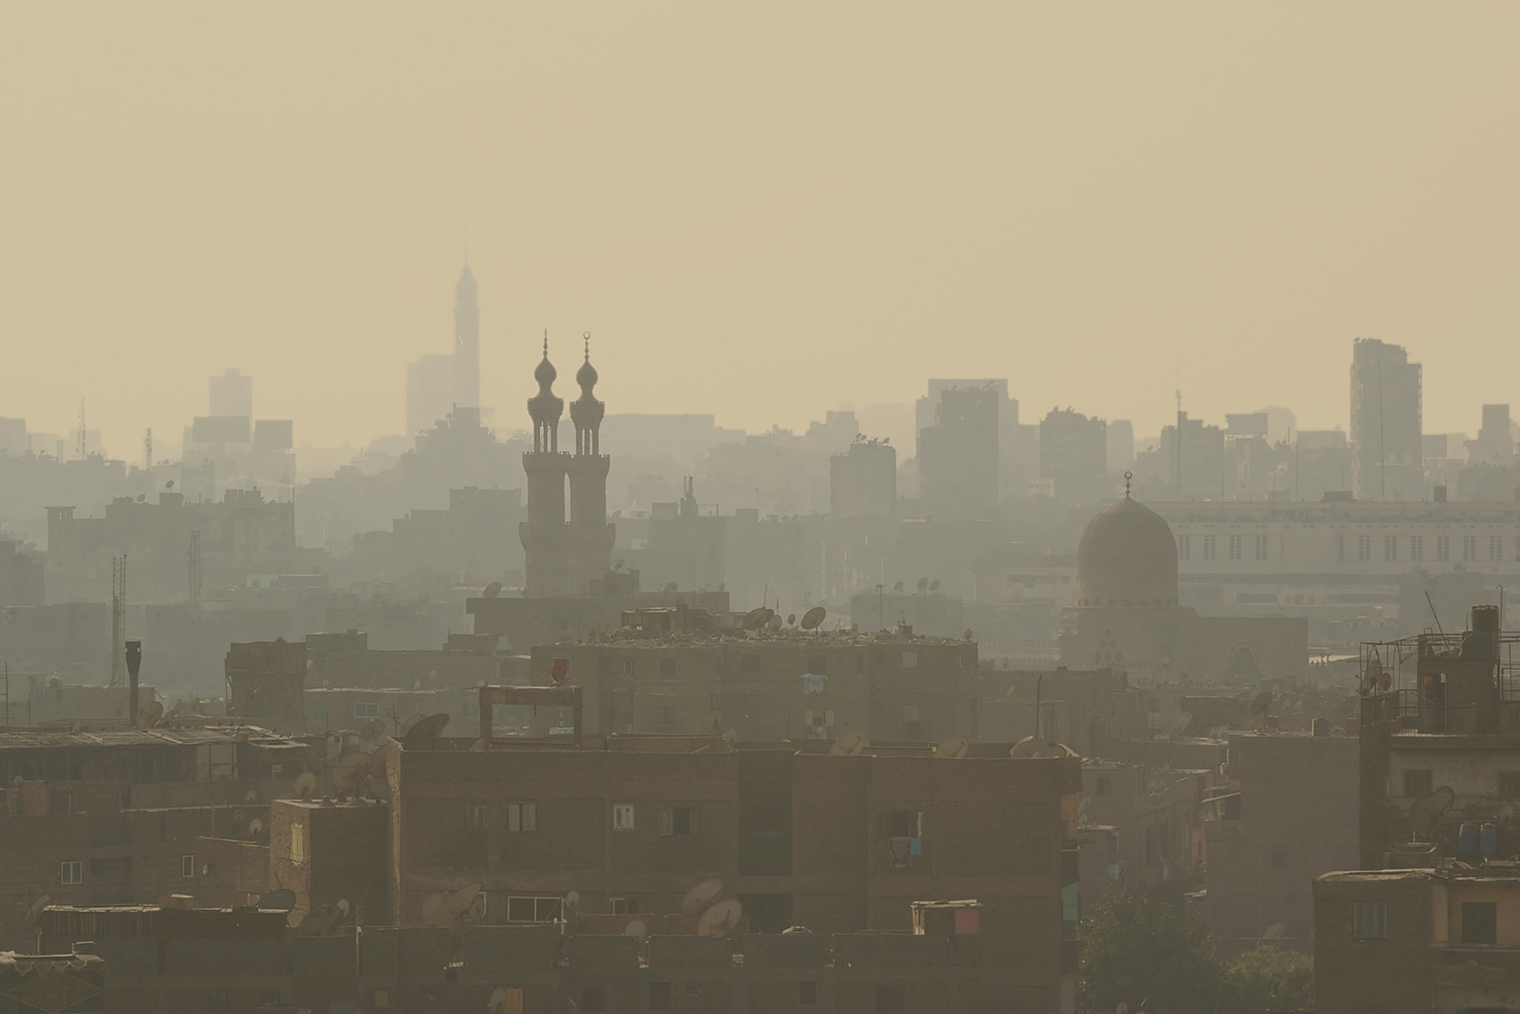 Изжелта-серый летний смог в египетском Каире — там жарко и много автотранспорта. Фото: paintings / Shutterstock